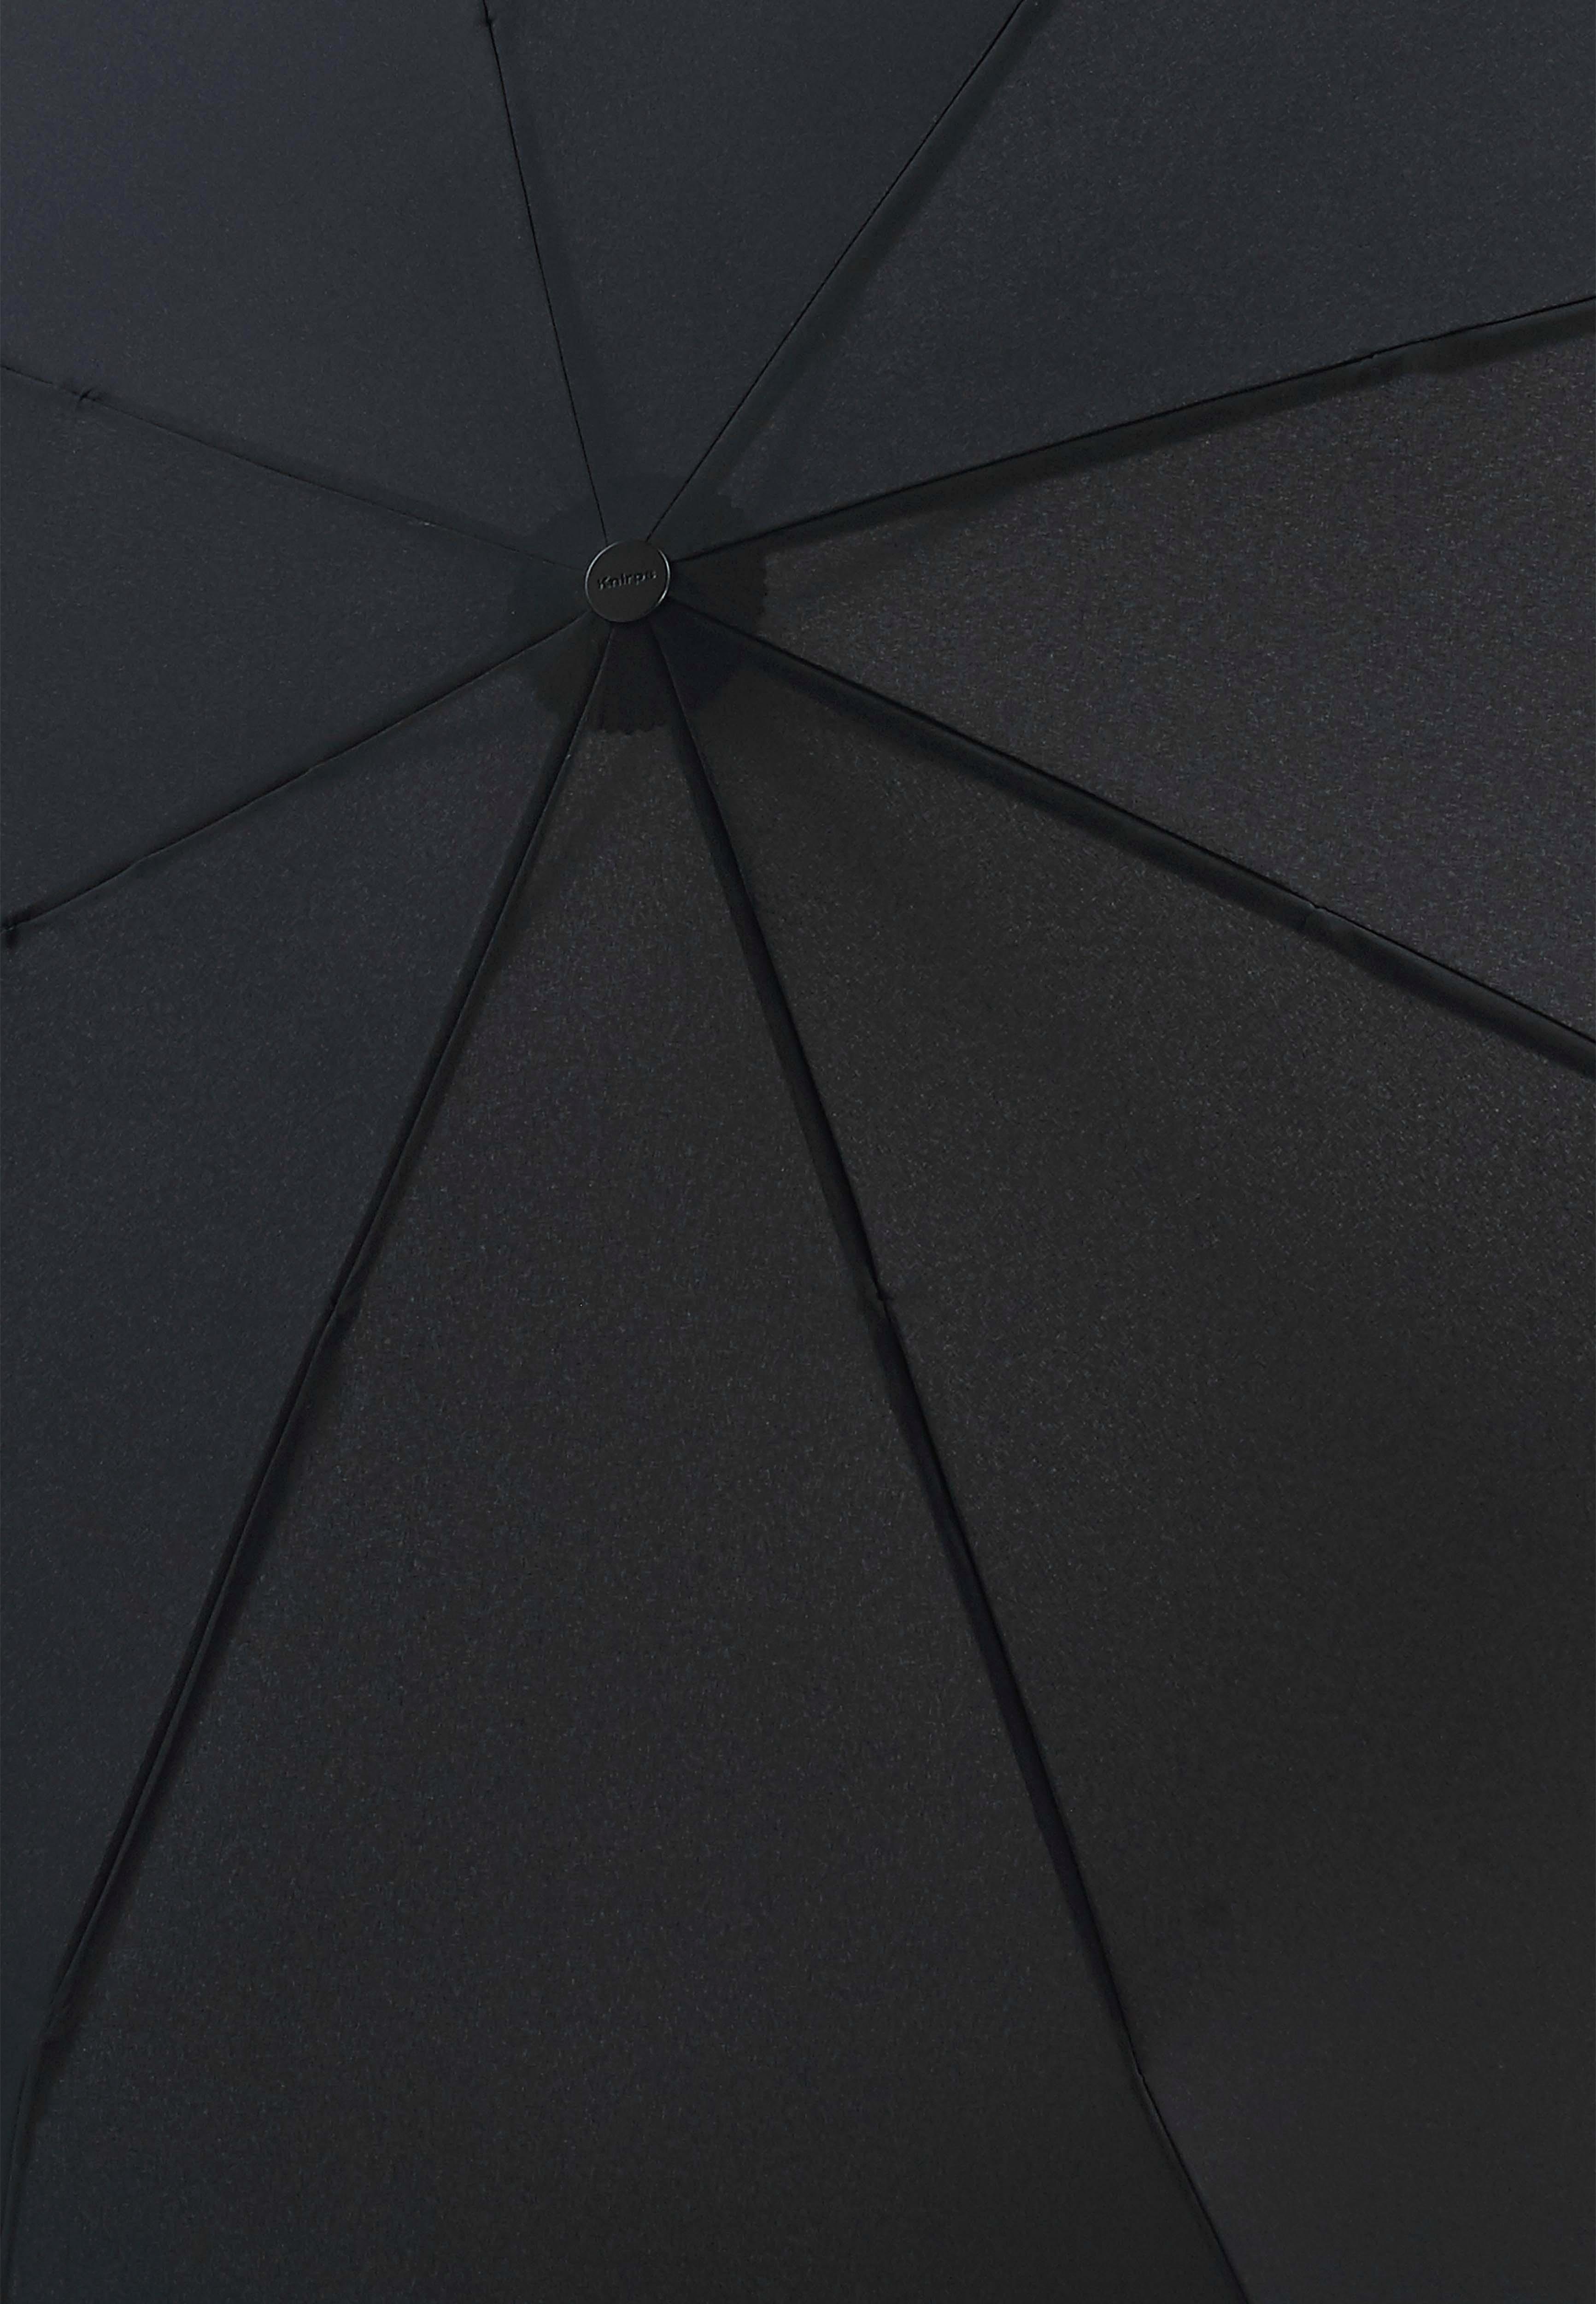 Large mit black, uni Taschenregenschirm Schirmdach Knirps® T.400 Duomatic, 2 Personen Extra für großem